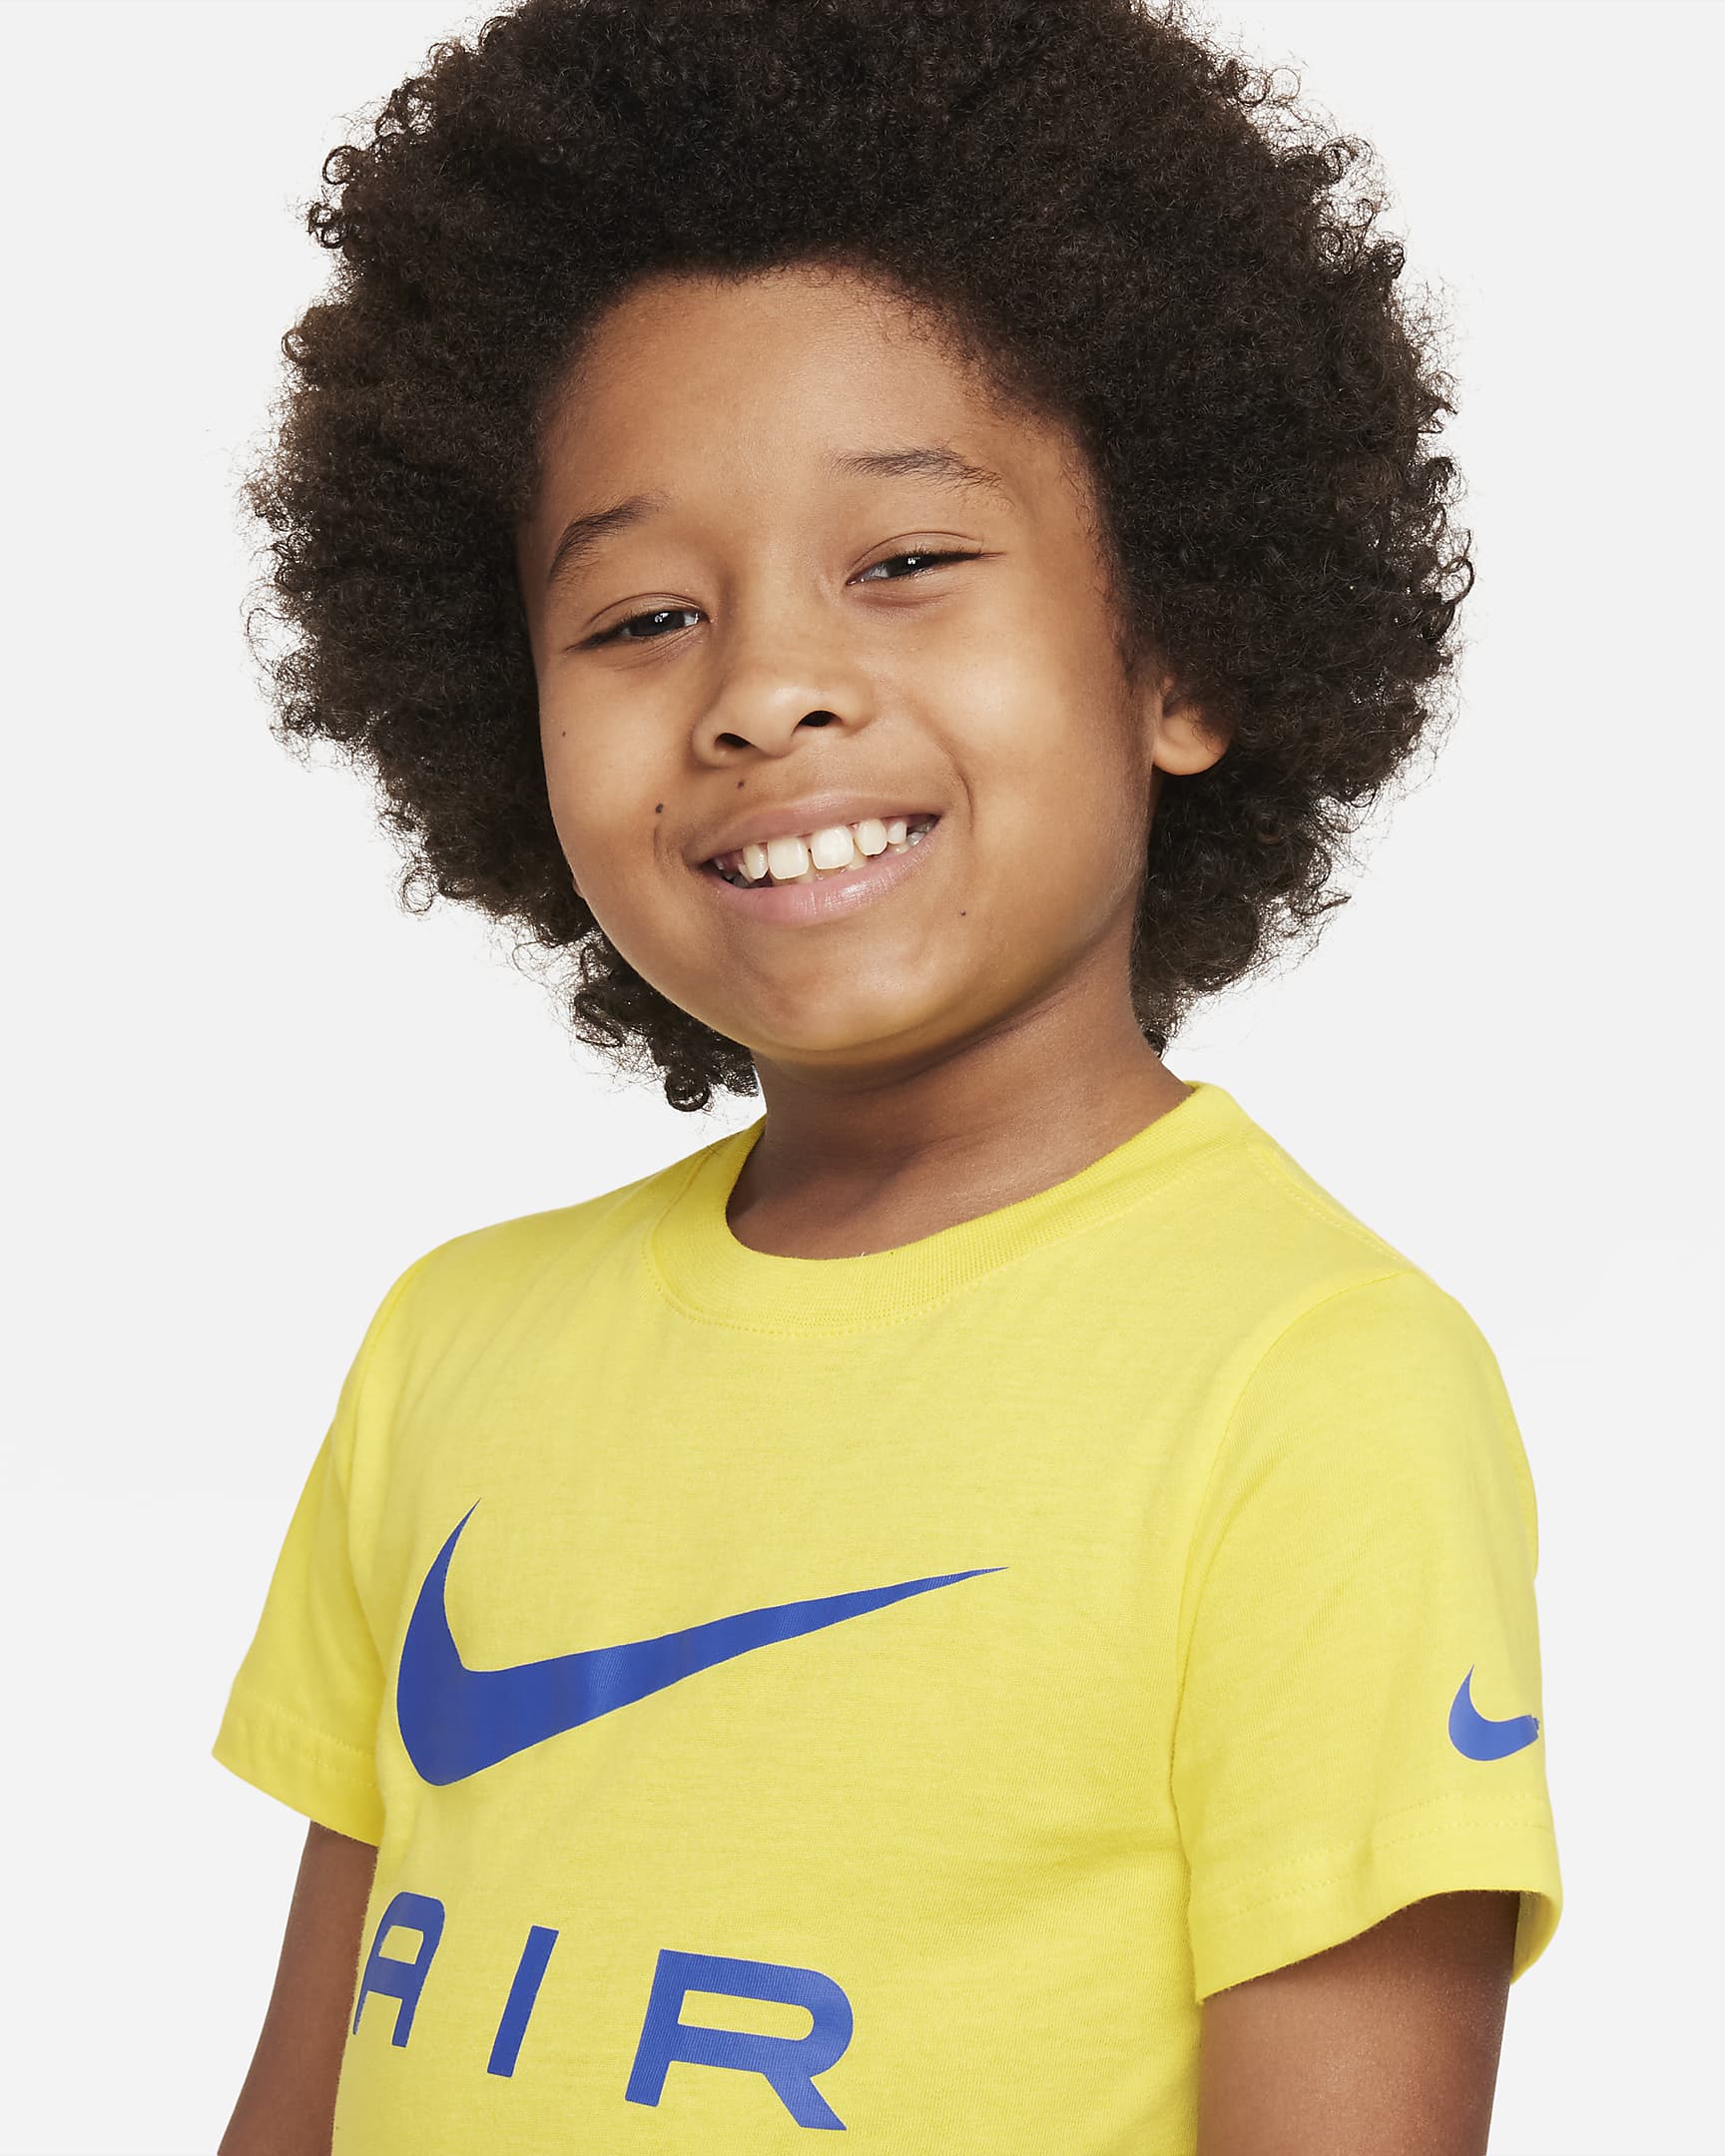 T-shirt Nike Air Nike – Bambini. Nike IT